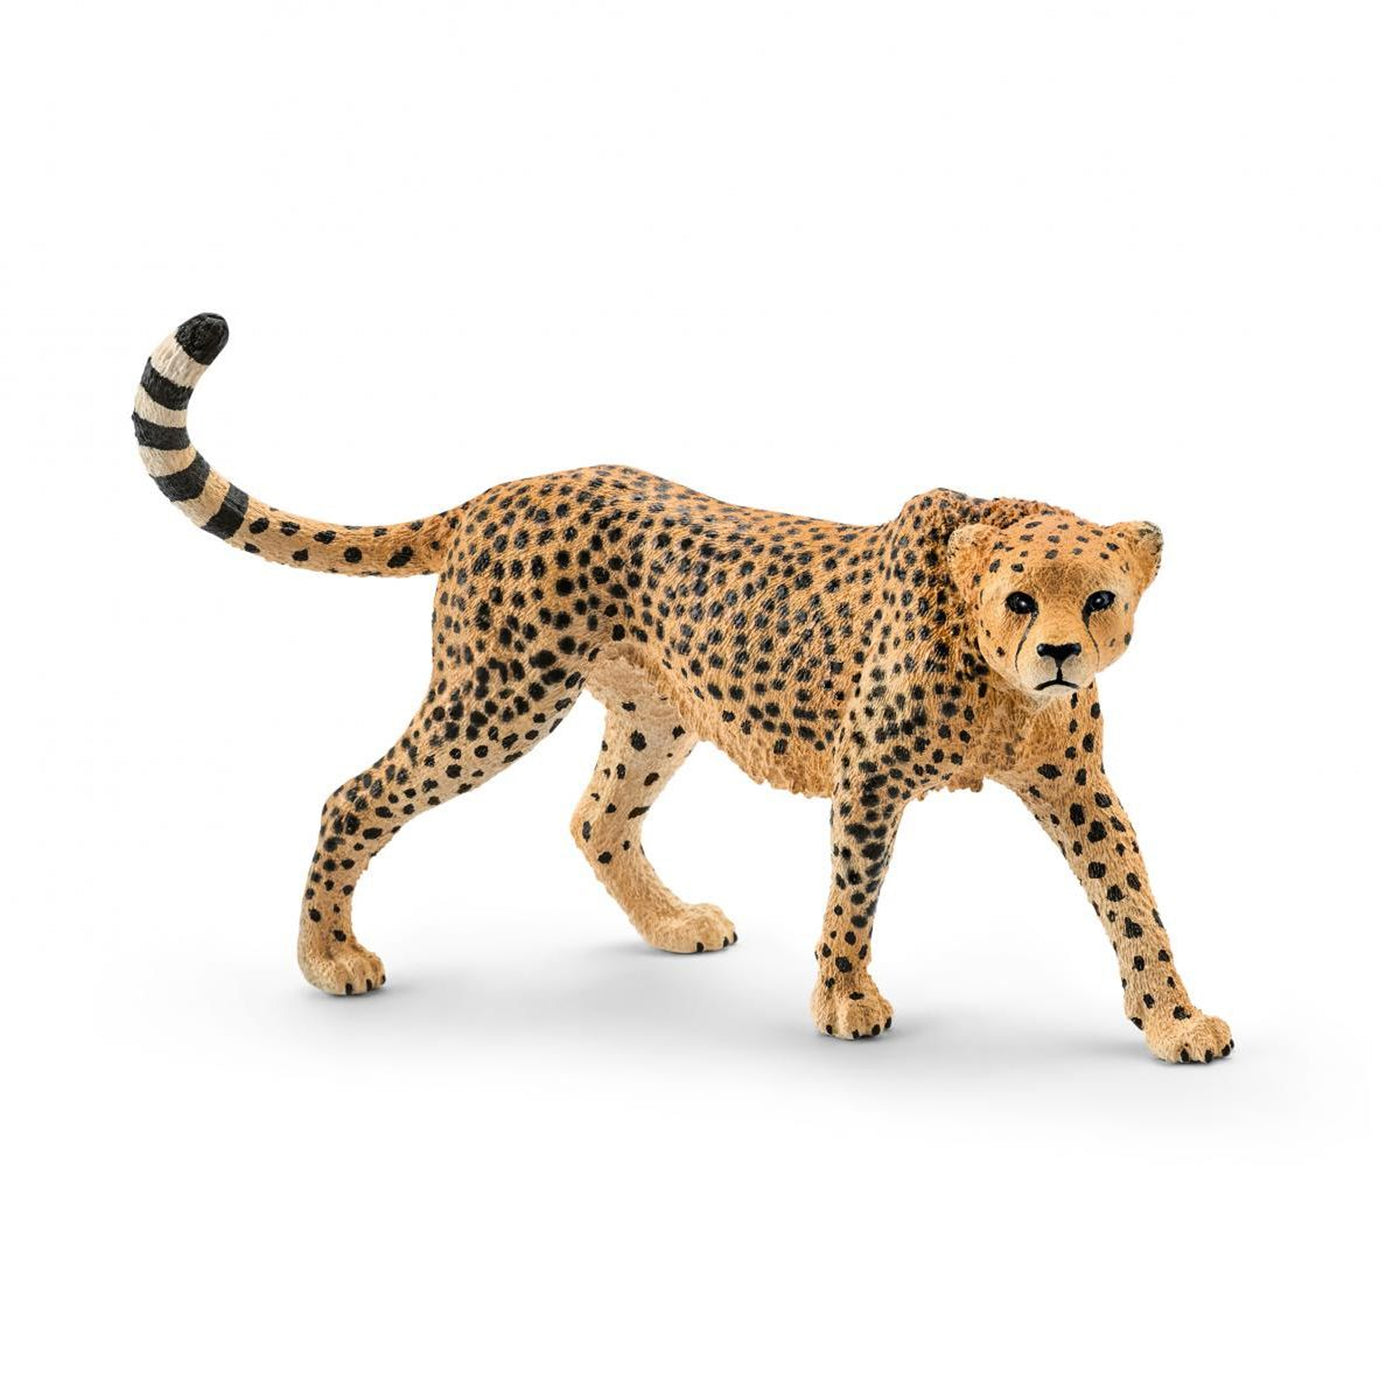 Schleich Wild Life Female Cheetah Toy Figurine